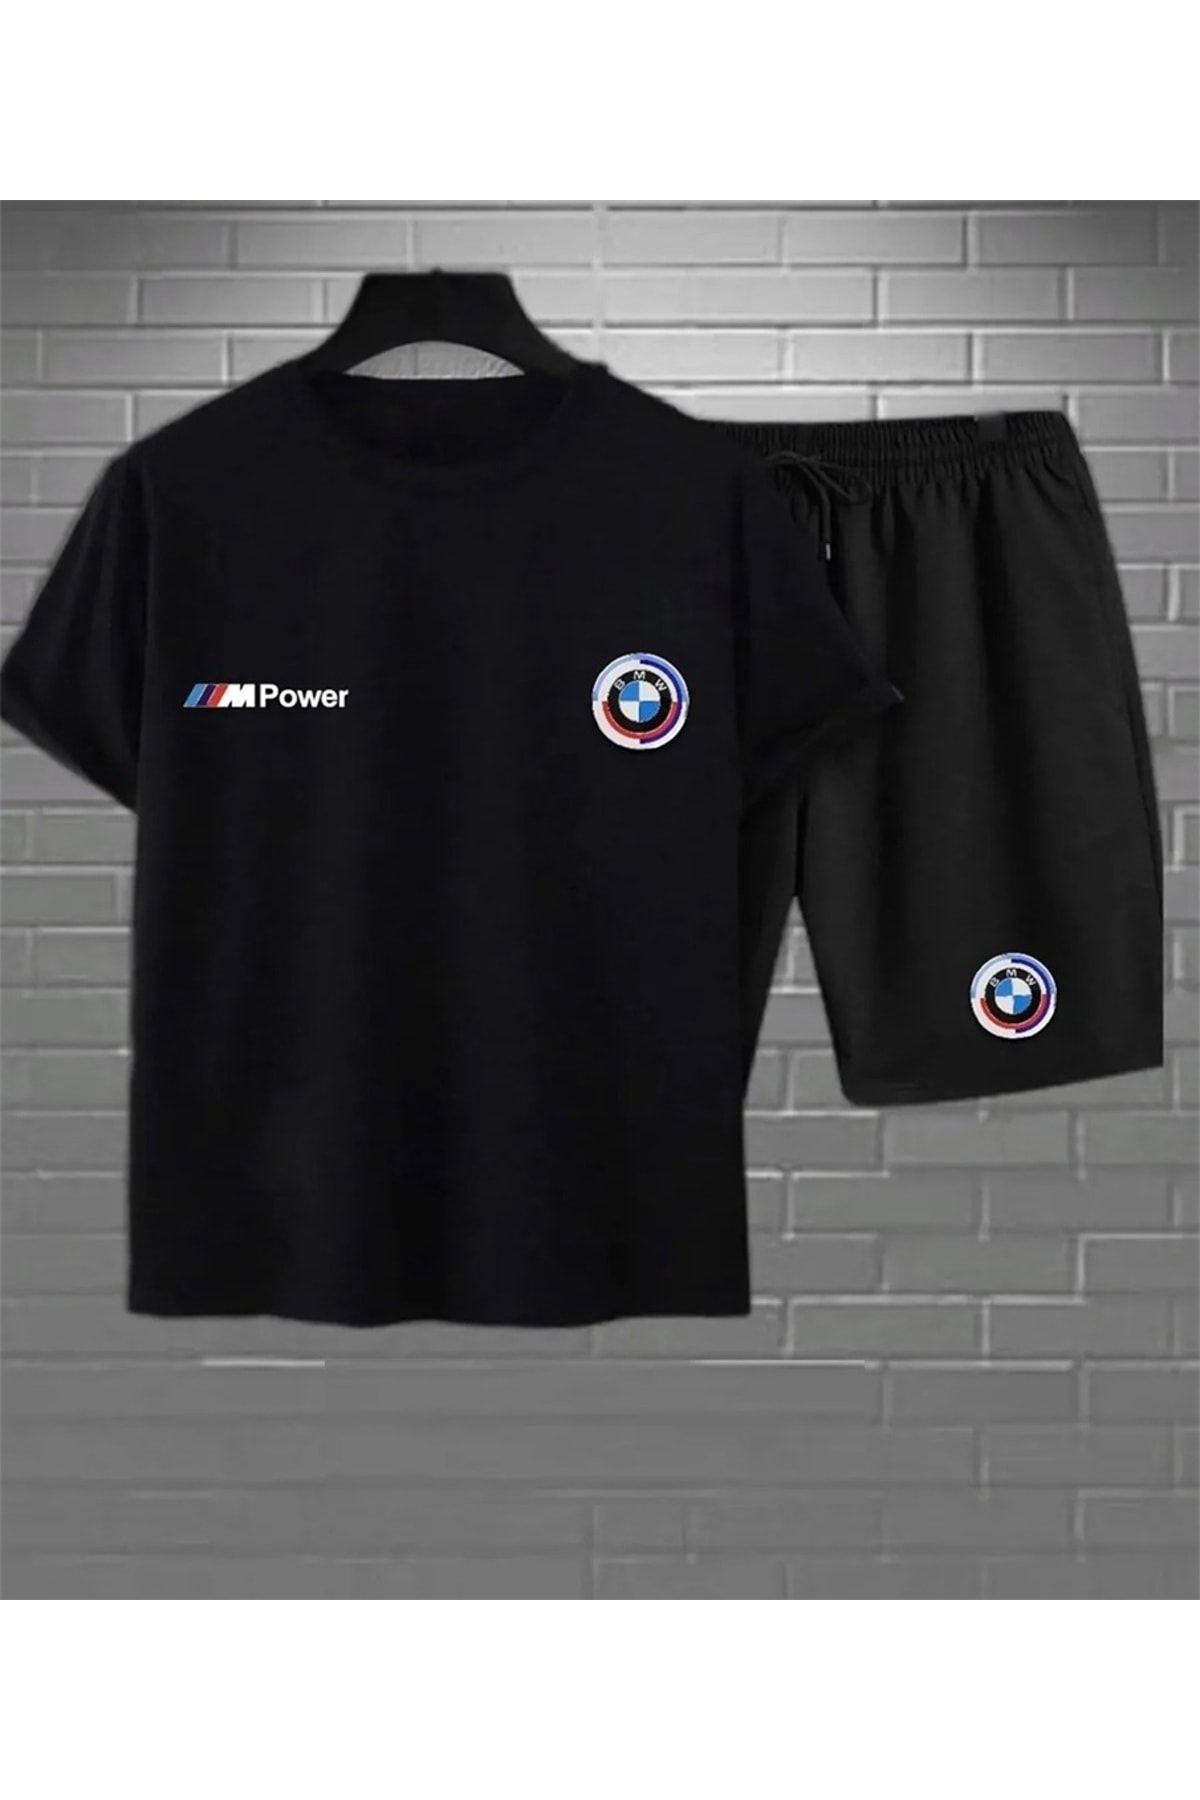 YOHO SPORT Bmw Baskılı Original Ünisex Yazlık T-shirt ve Eşofman Altı 2 li Set Combin Takım